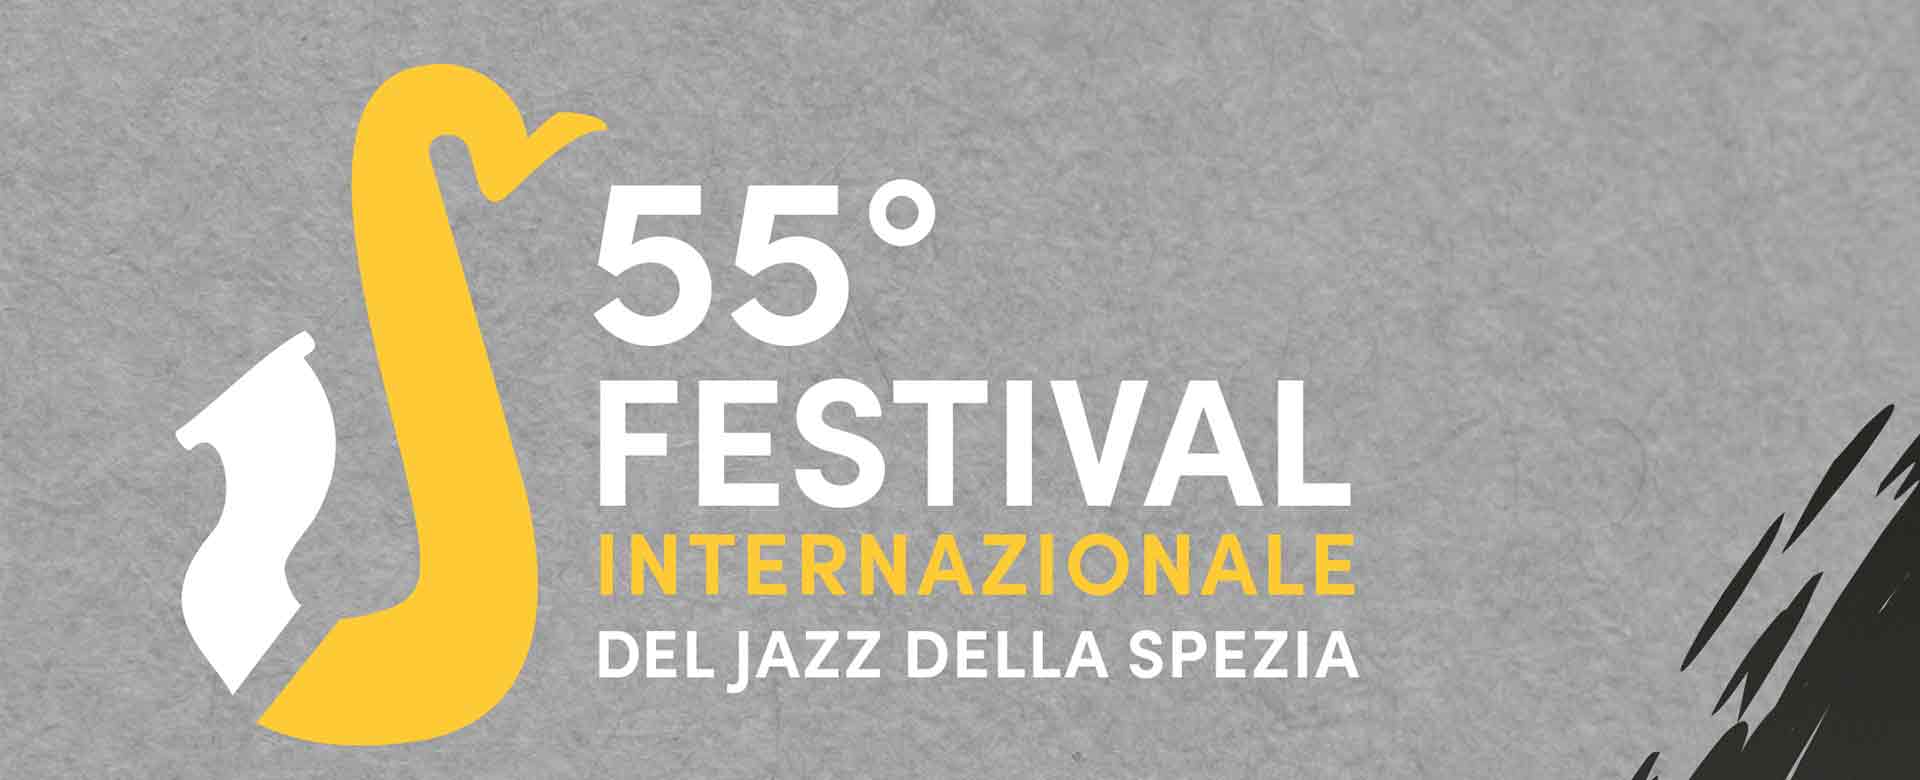 Festival Internazionale del Jazz della Spezia